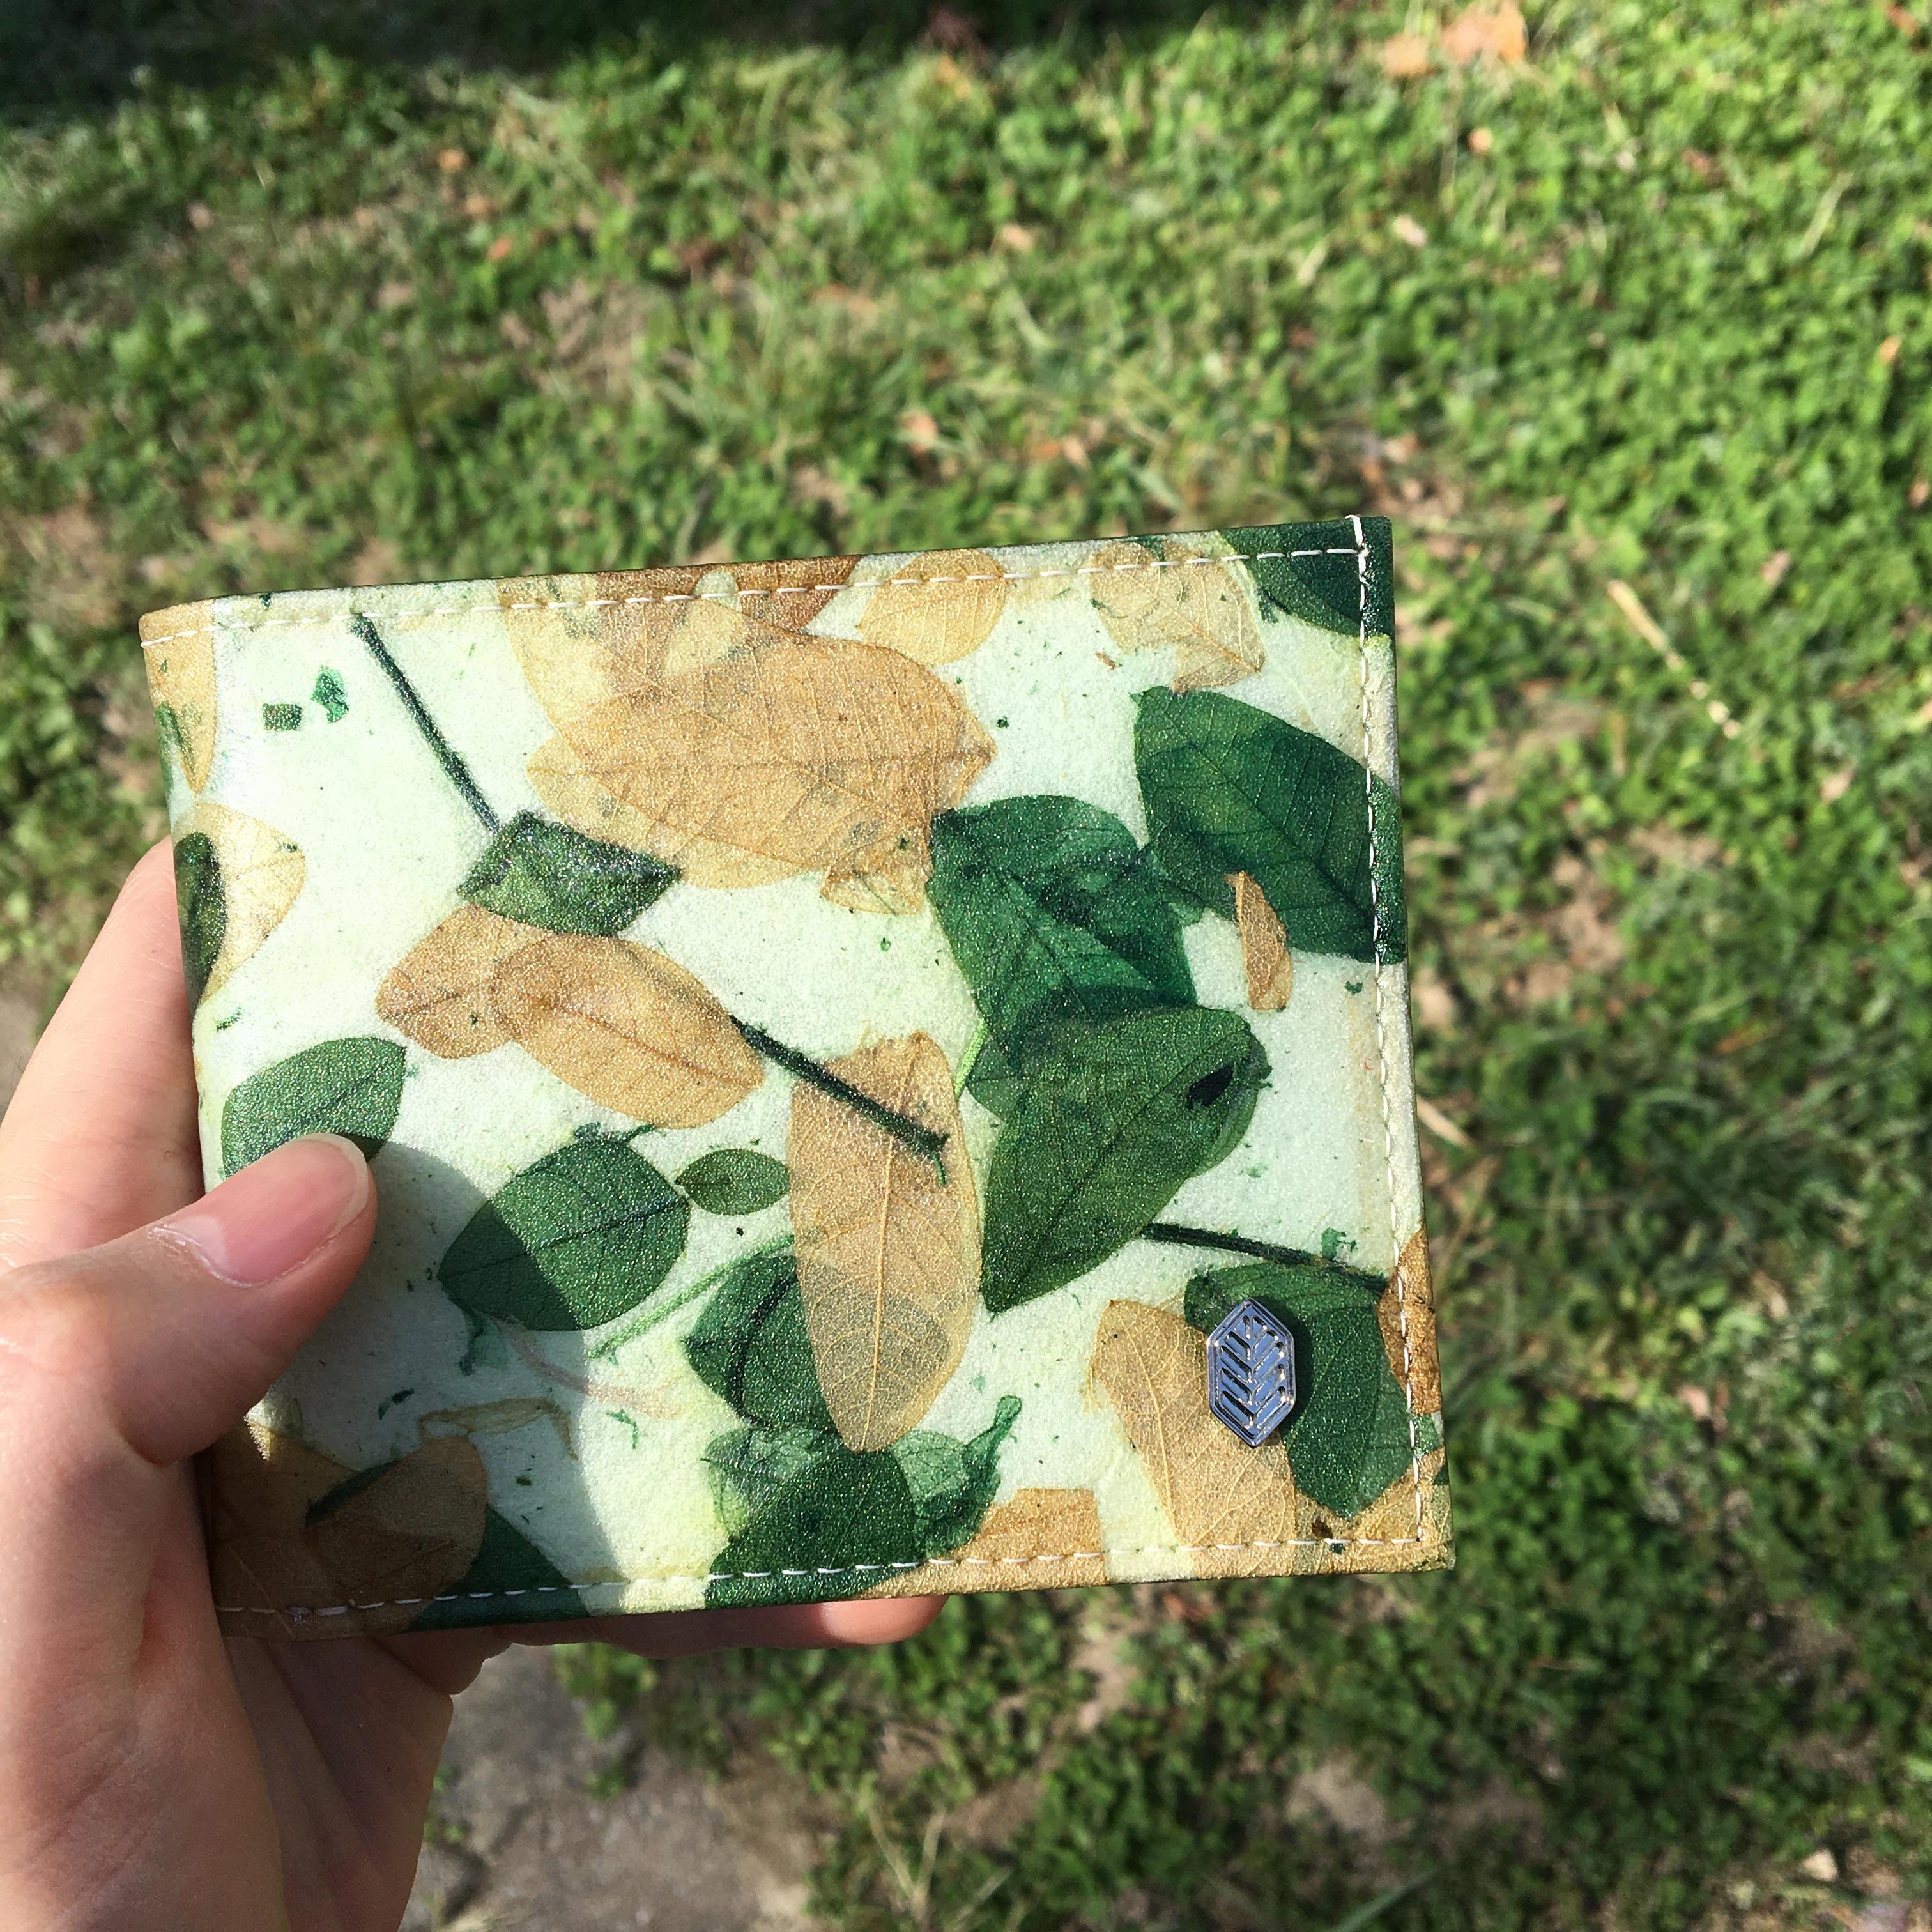 카모-반지갑-사진-갈색과-초록색-잎사귀-모양이-겹겹이-그대로-비치는-반지갑